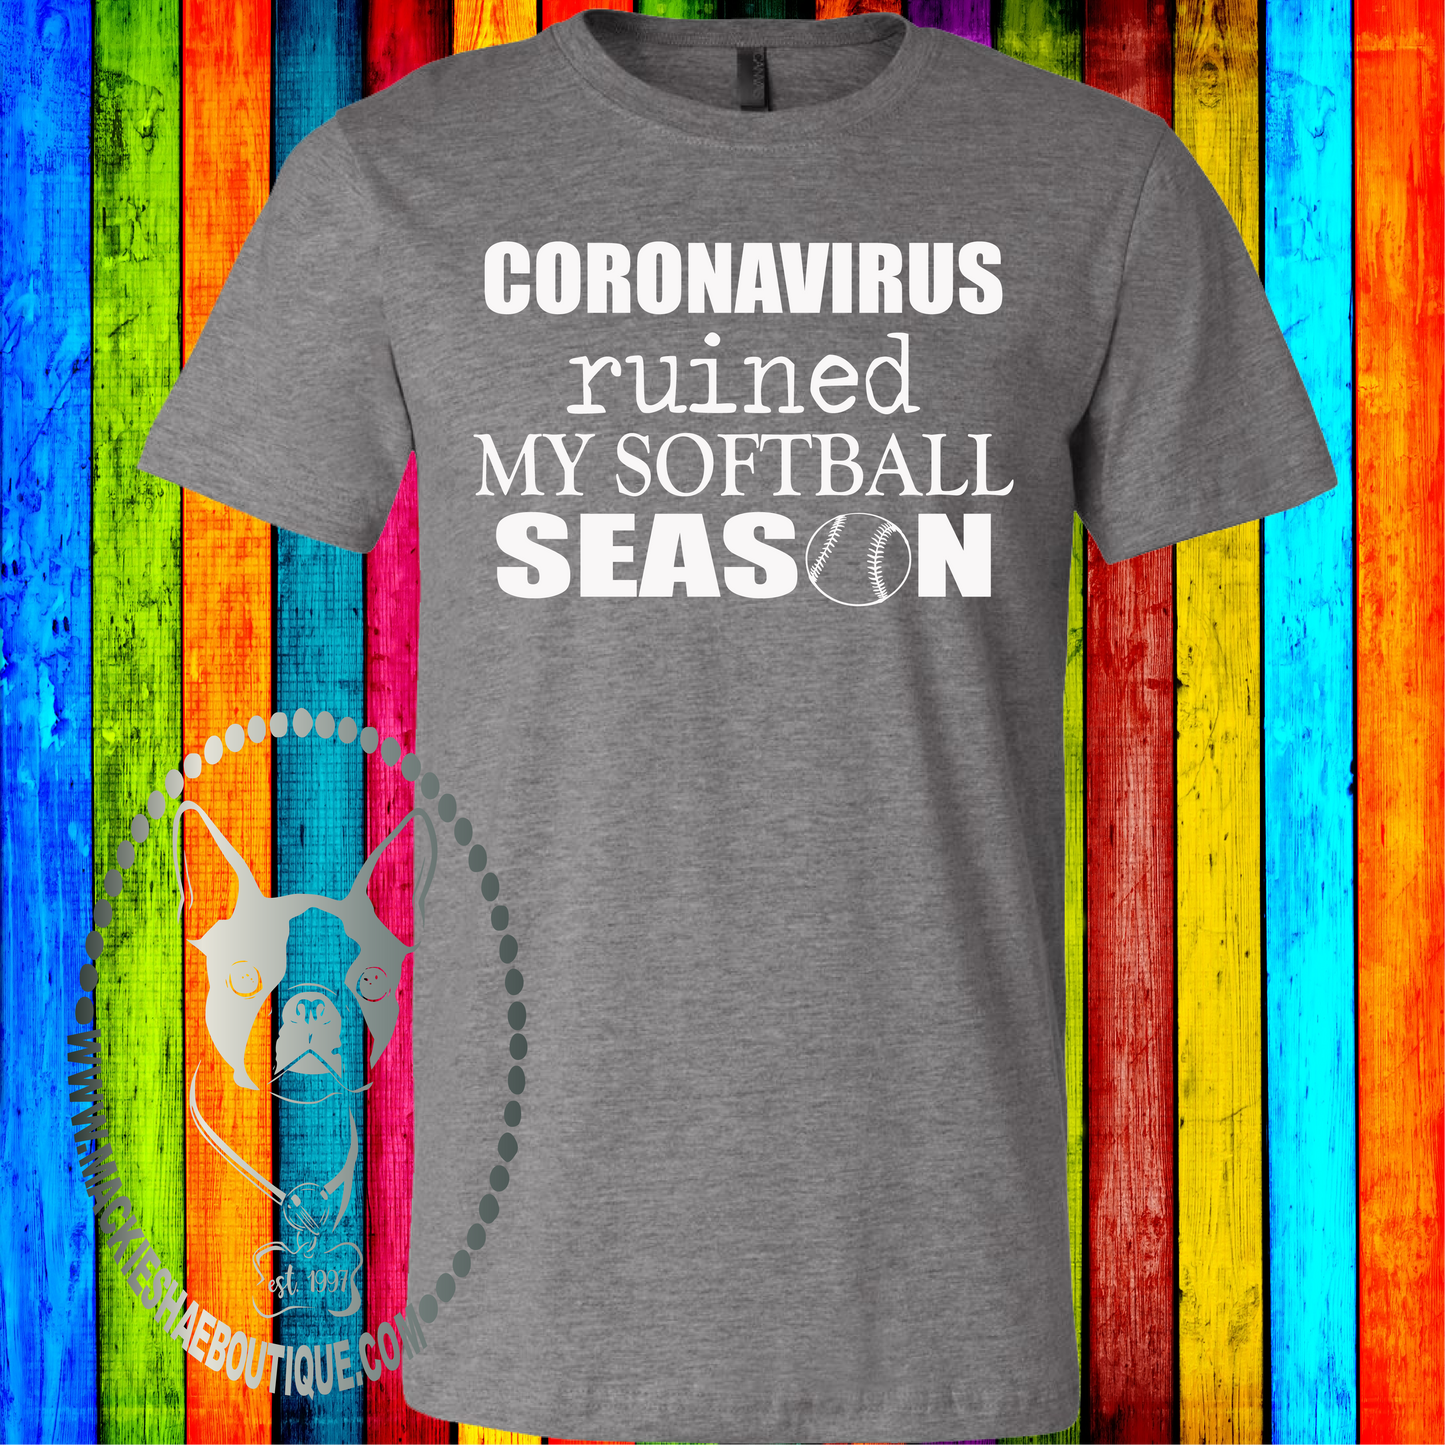 Coronavirus Ruined My Softball Season Custom Shirt, Soft Short Sleeve